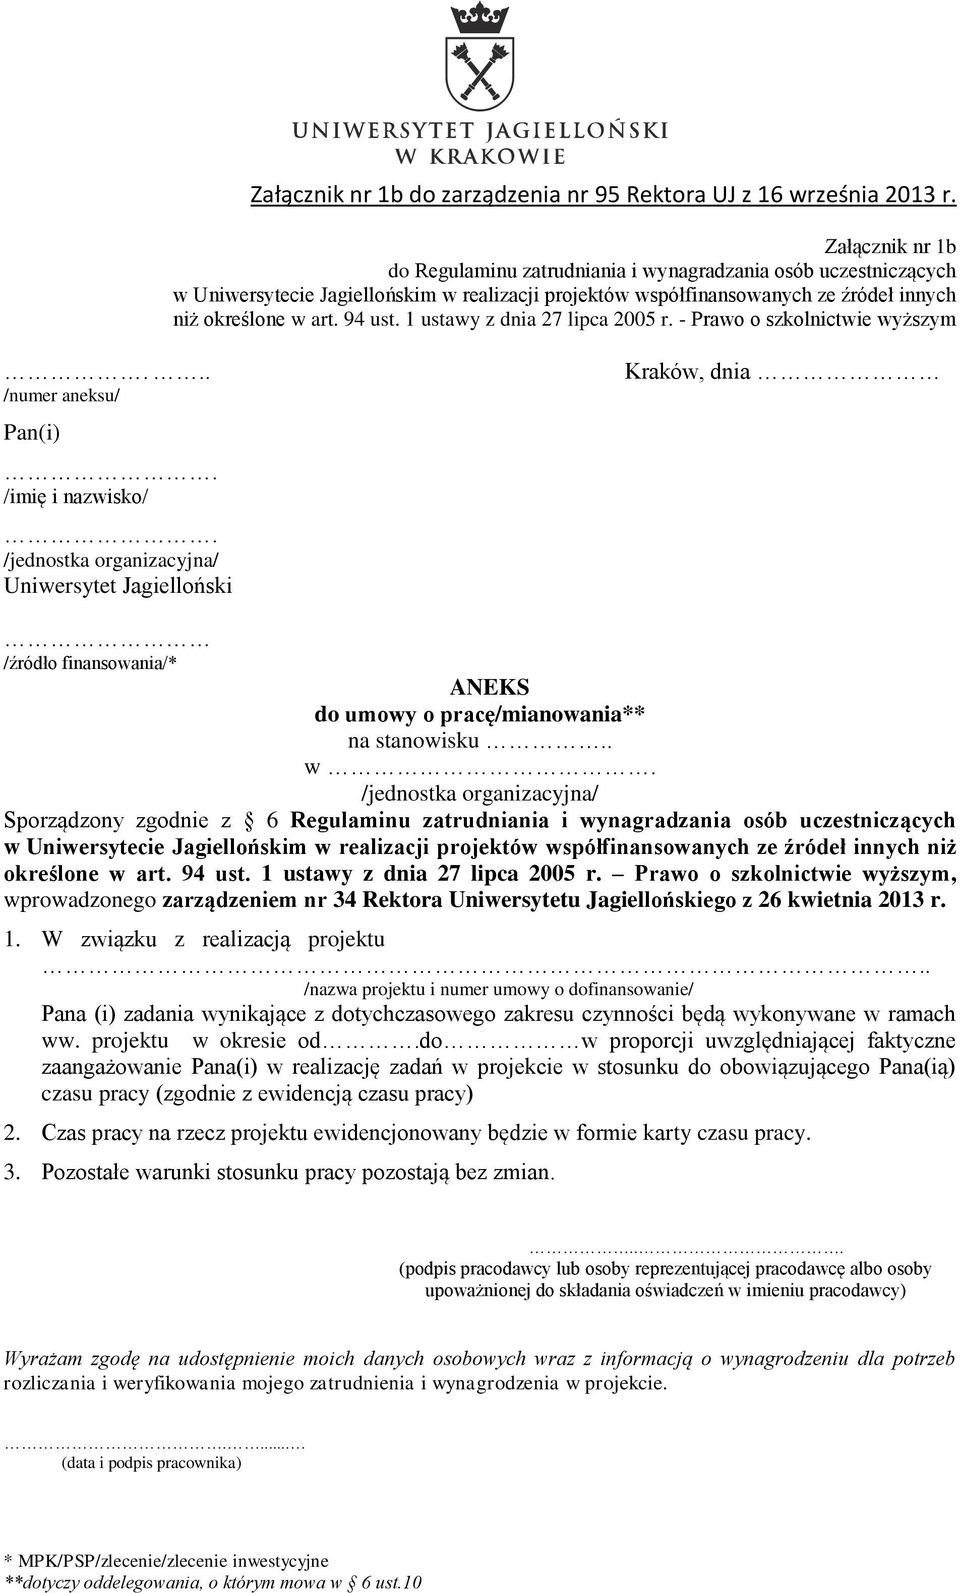 94 ust. 1 ustawy z dnia 27 lipca 2005 r. Prawo o szkolnictwie wyższym, wprowadzonego zarządzeniem nr 34 Rektora Uniwersytetu Jagiellońskiego z 26 kwietnia 2013 r. 1. W związku z realizacją projektu.